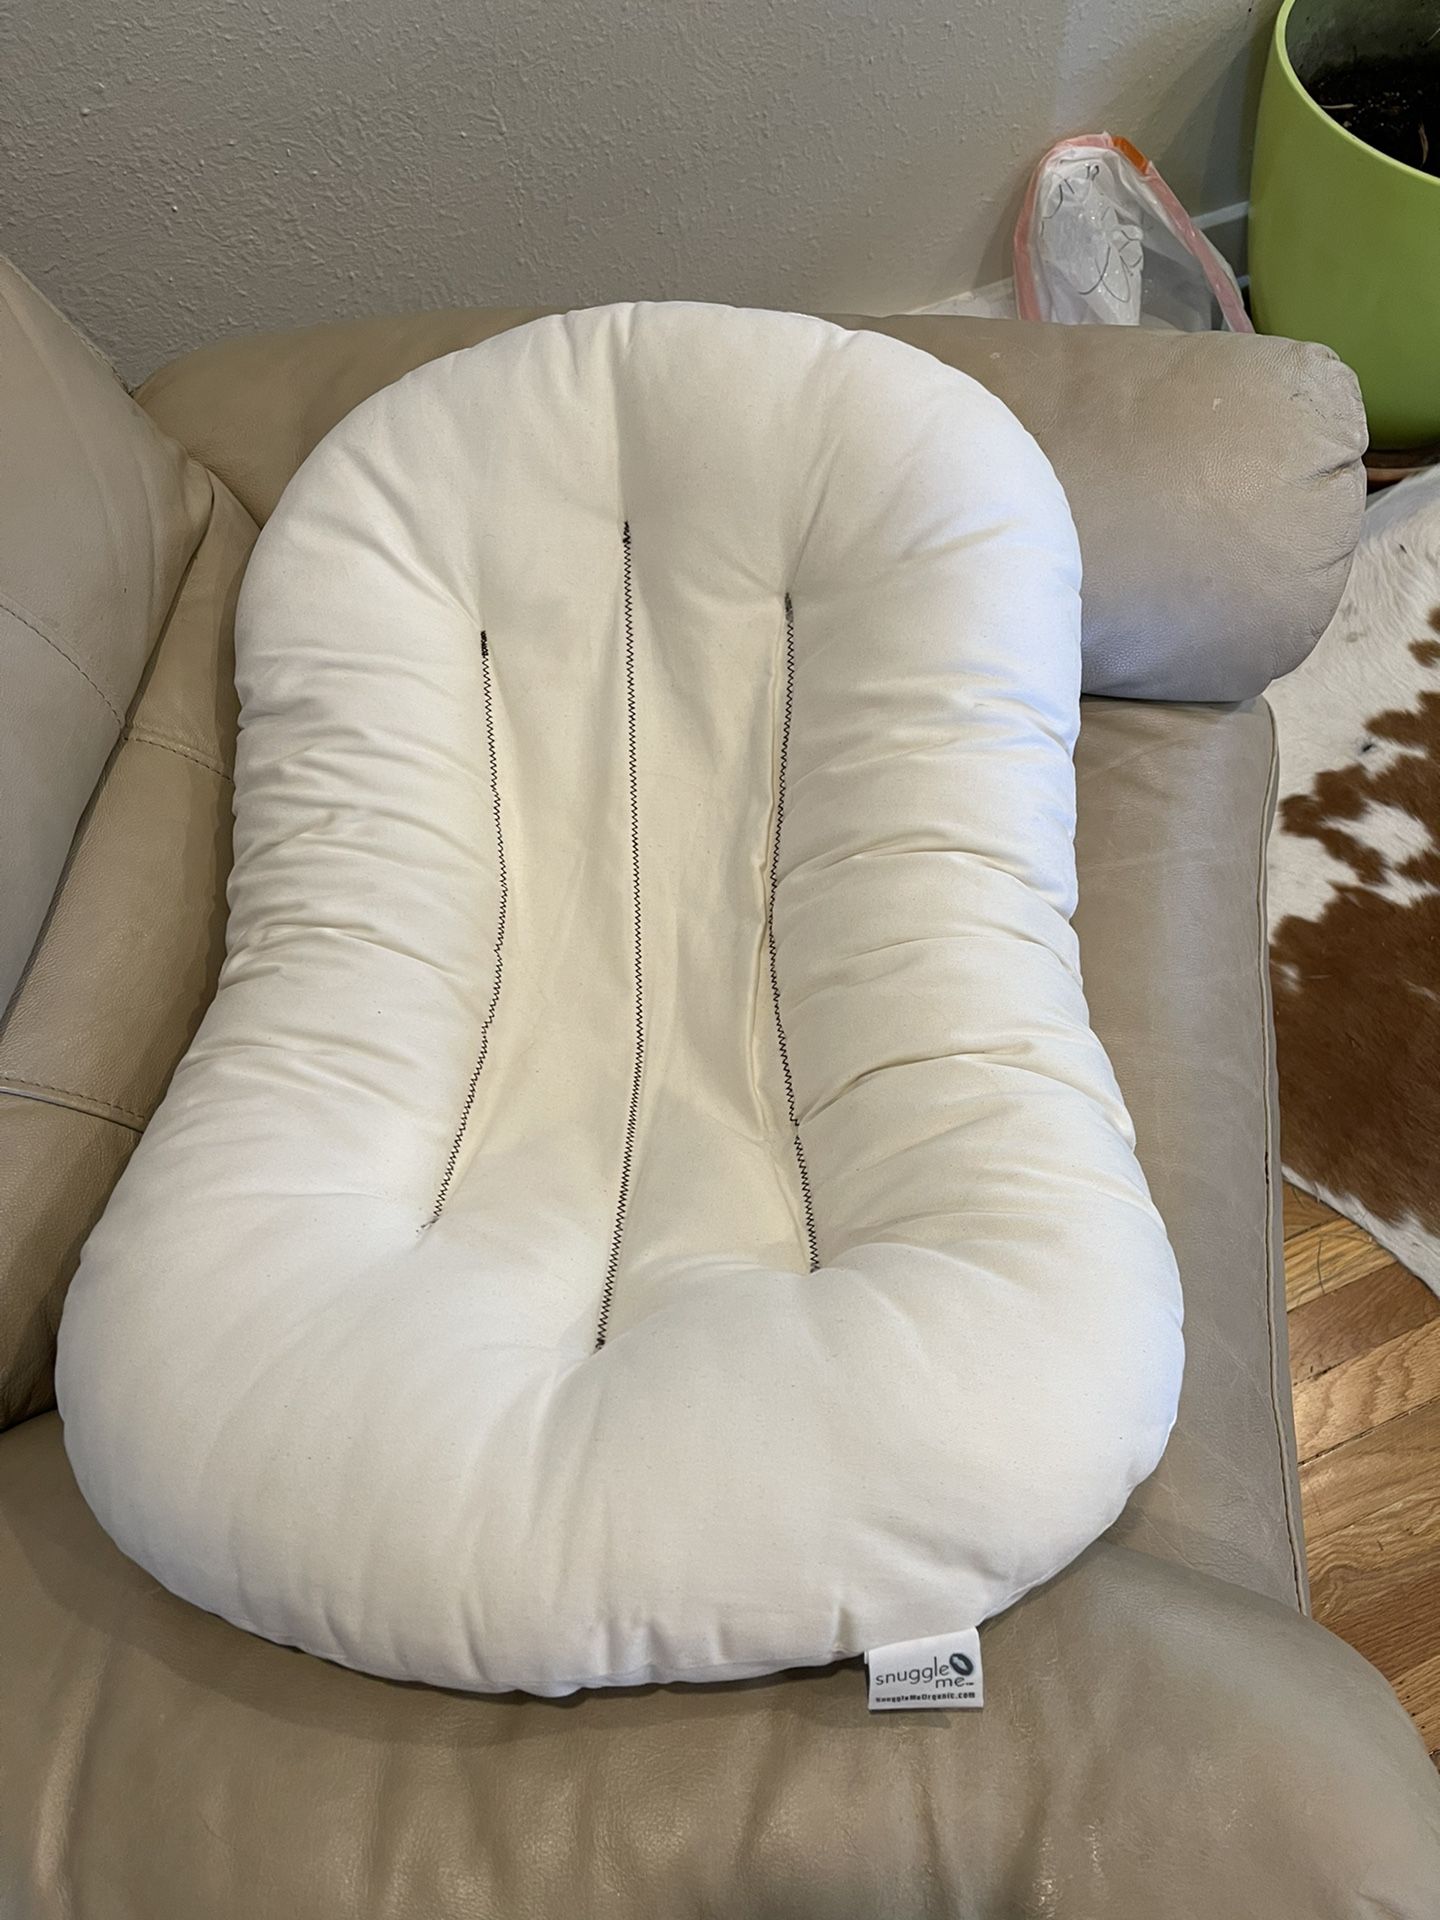 Snuggle pillow